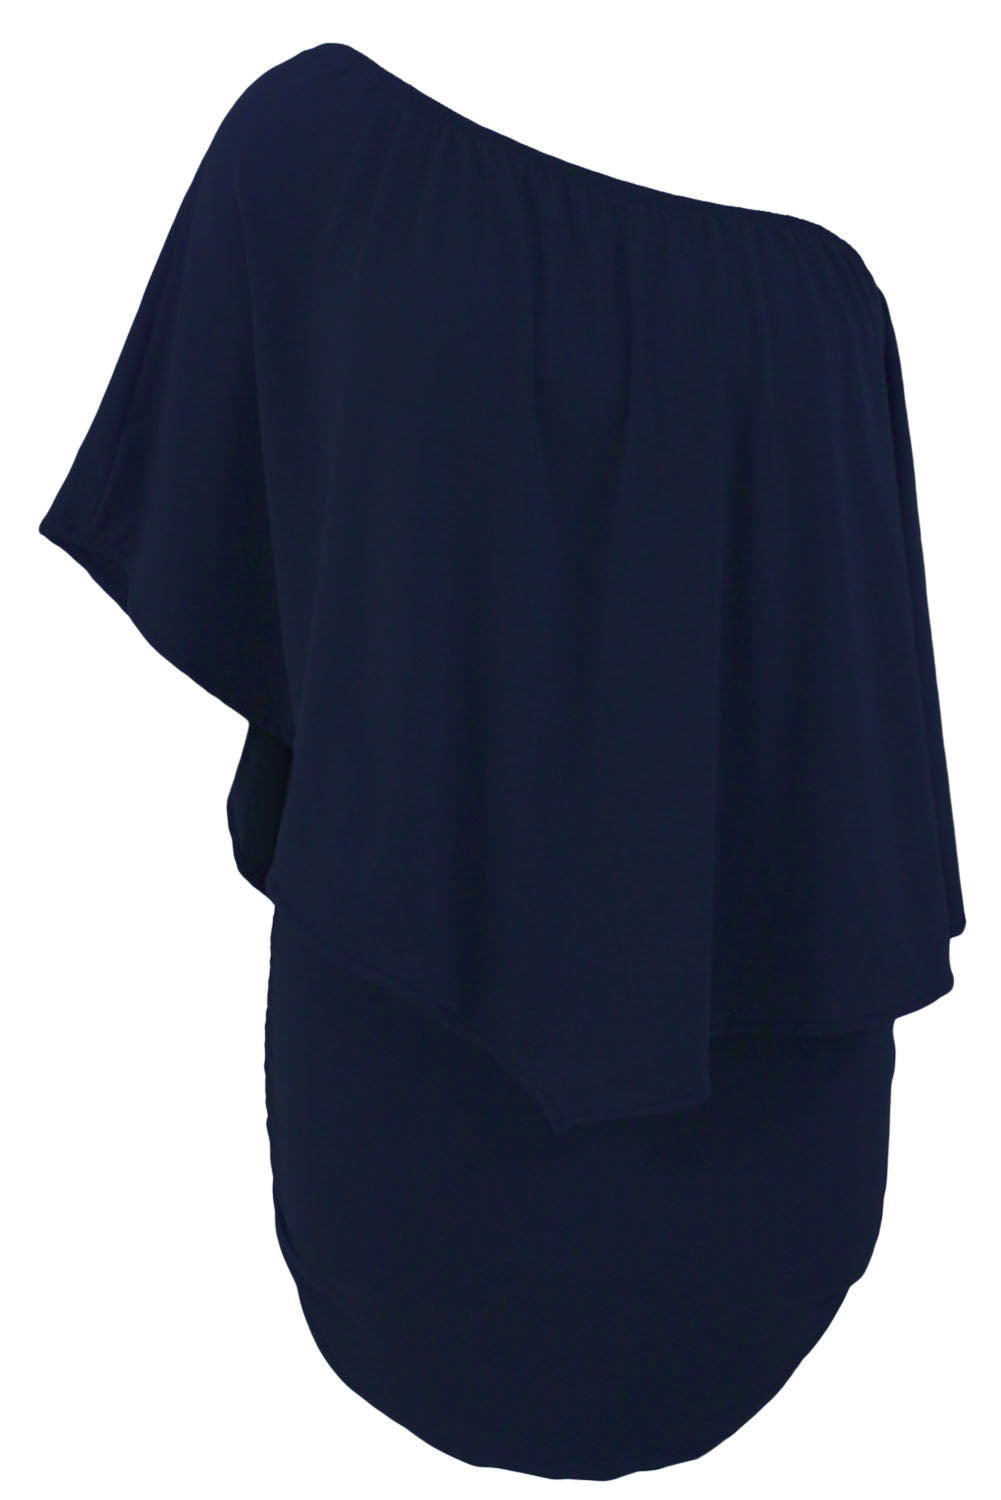 Robe mini poncho bleu foncé superposée à plusieurs pansements